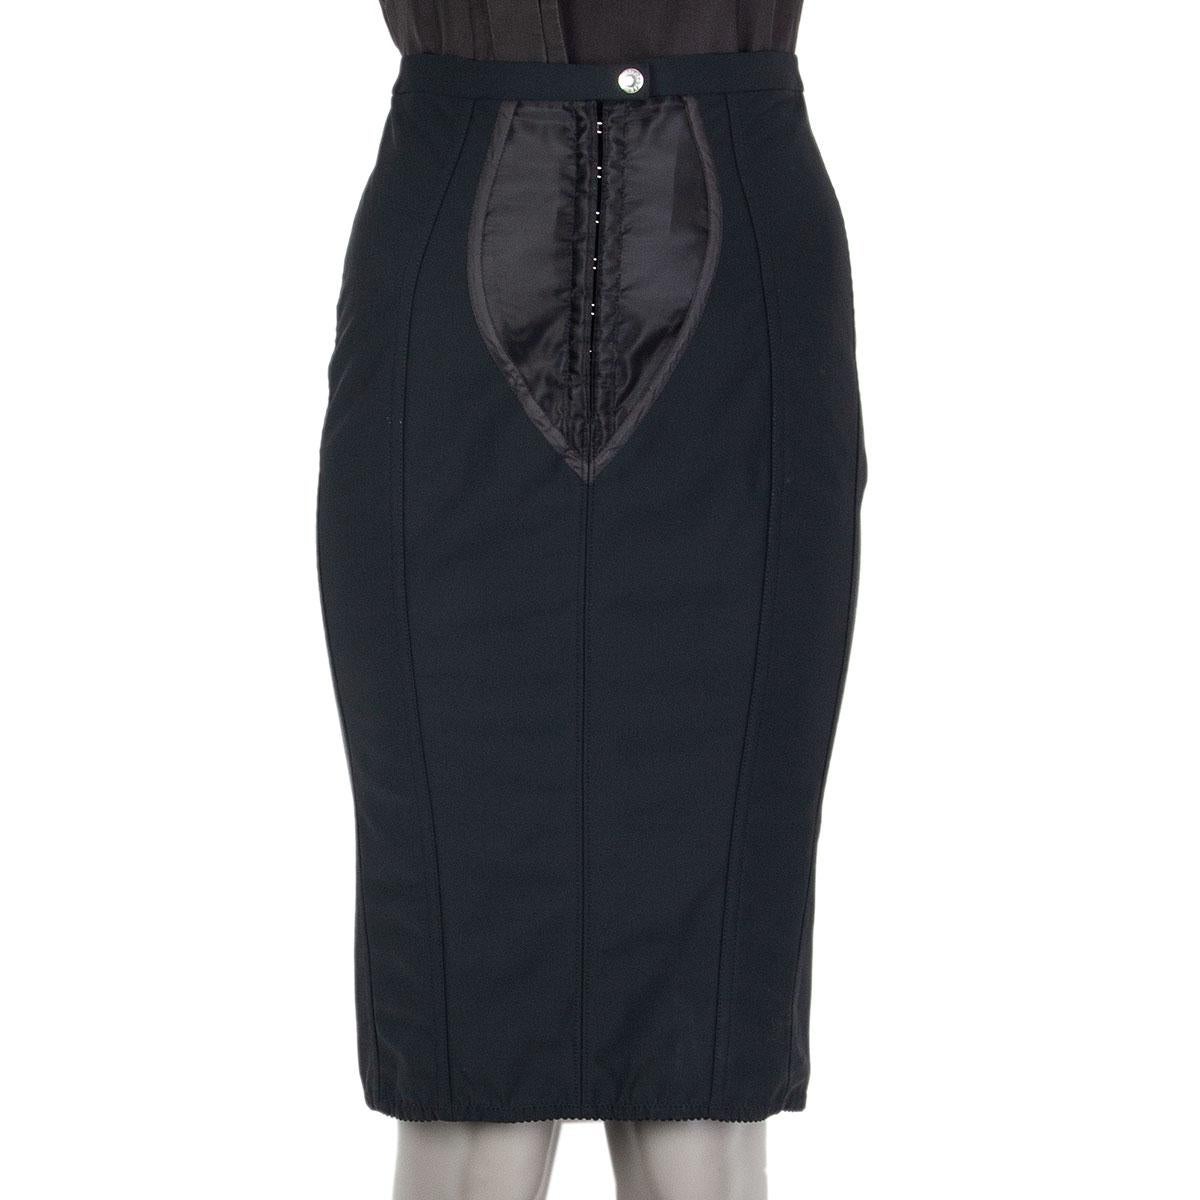 black polyester skirt